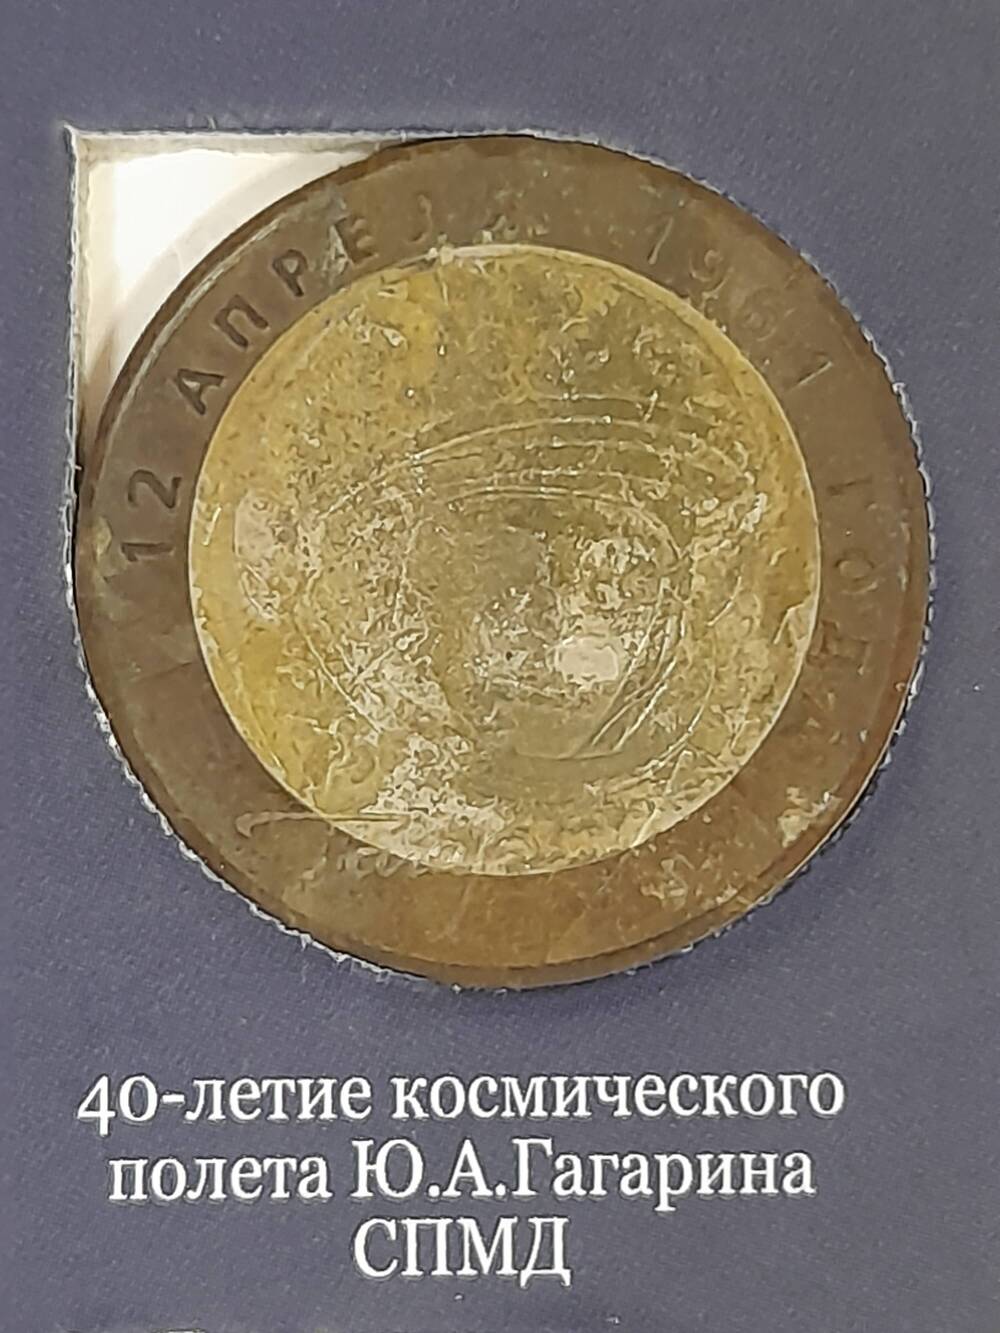 Монета памятная 10 РУБЛЕЙ. 40-летие космического полета Ю.А.Гагарина 2001 г. Россия